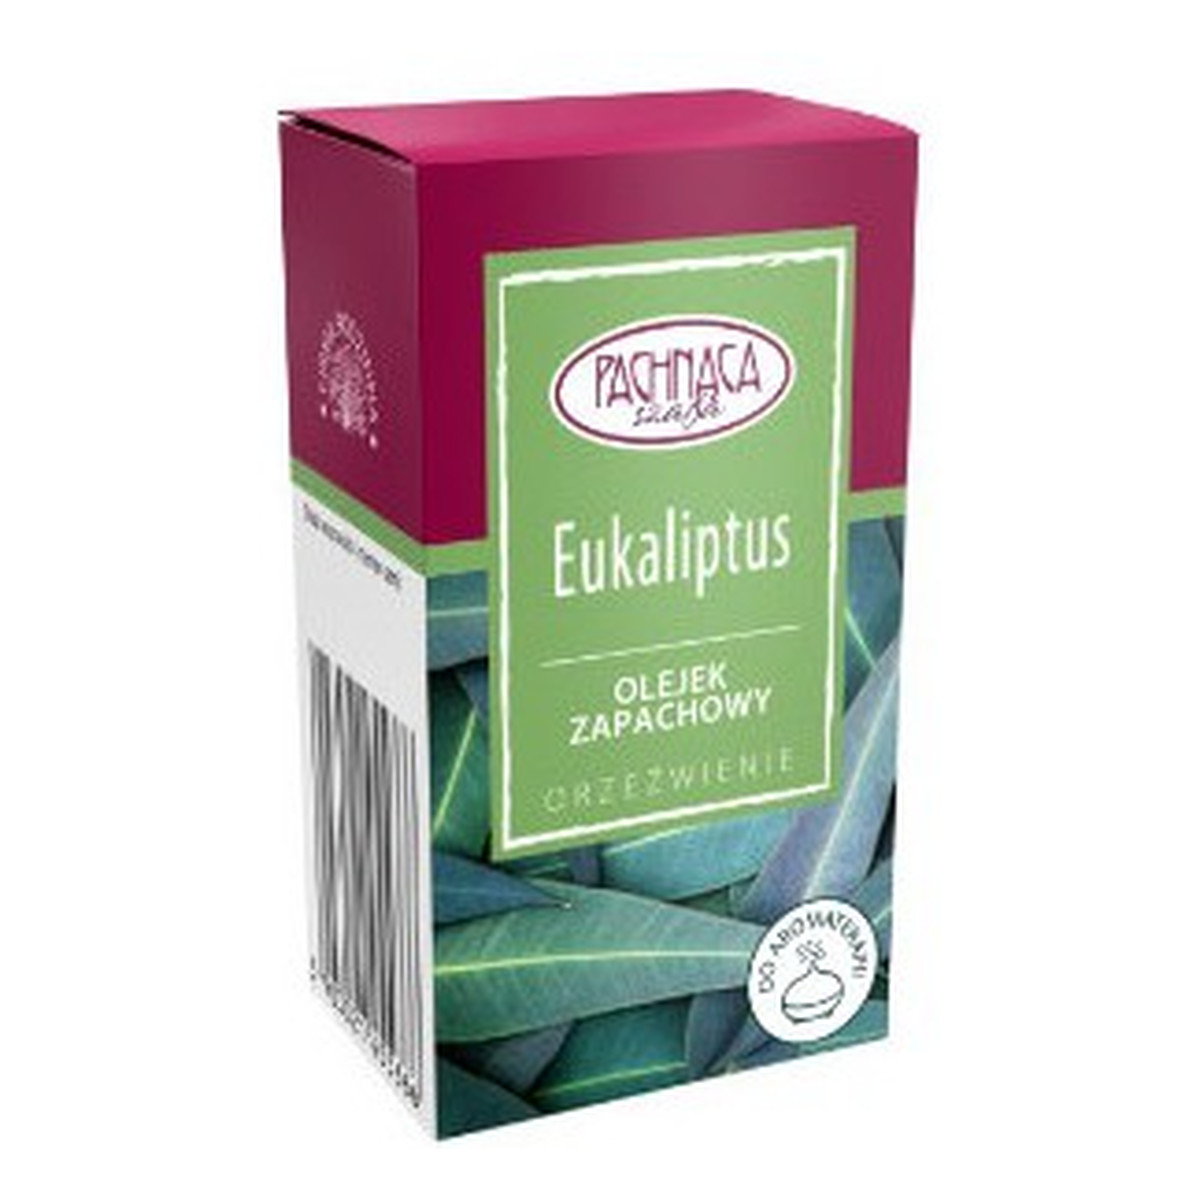 Pachnąca Szafa Olejek zapachowy Eukaliptus 10ml